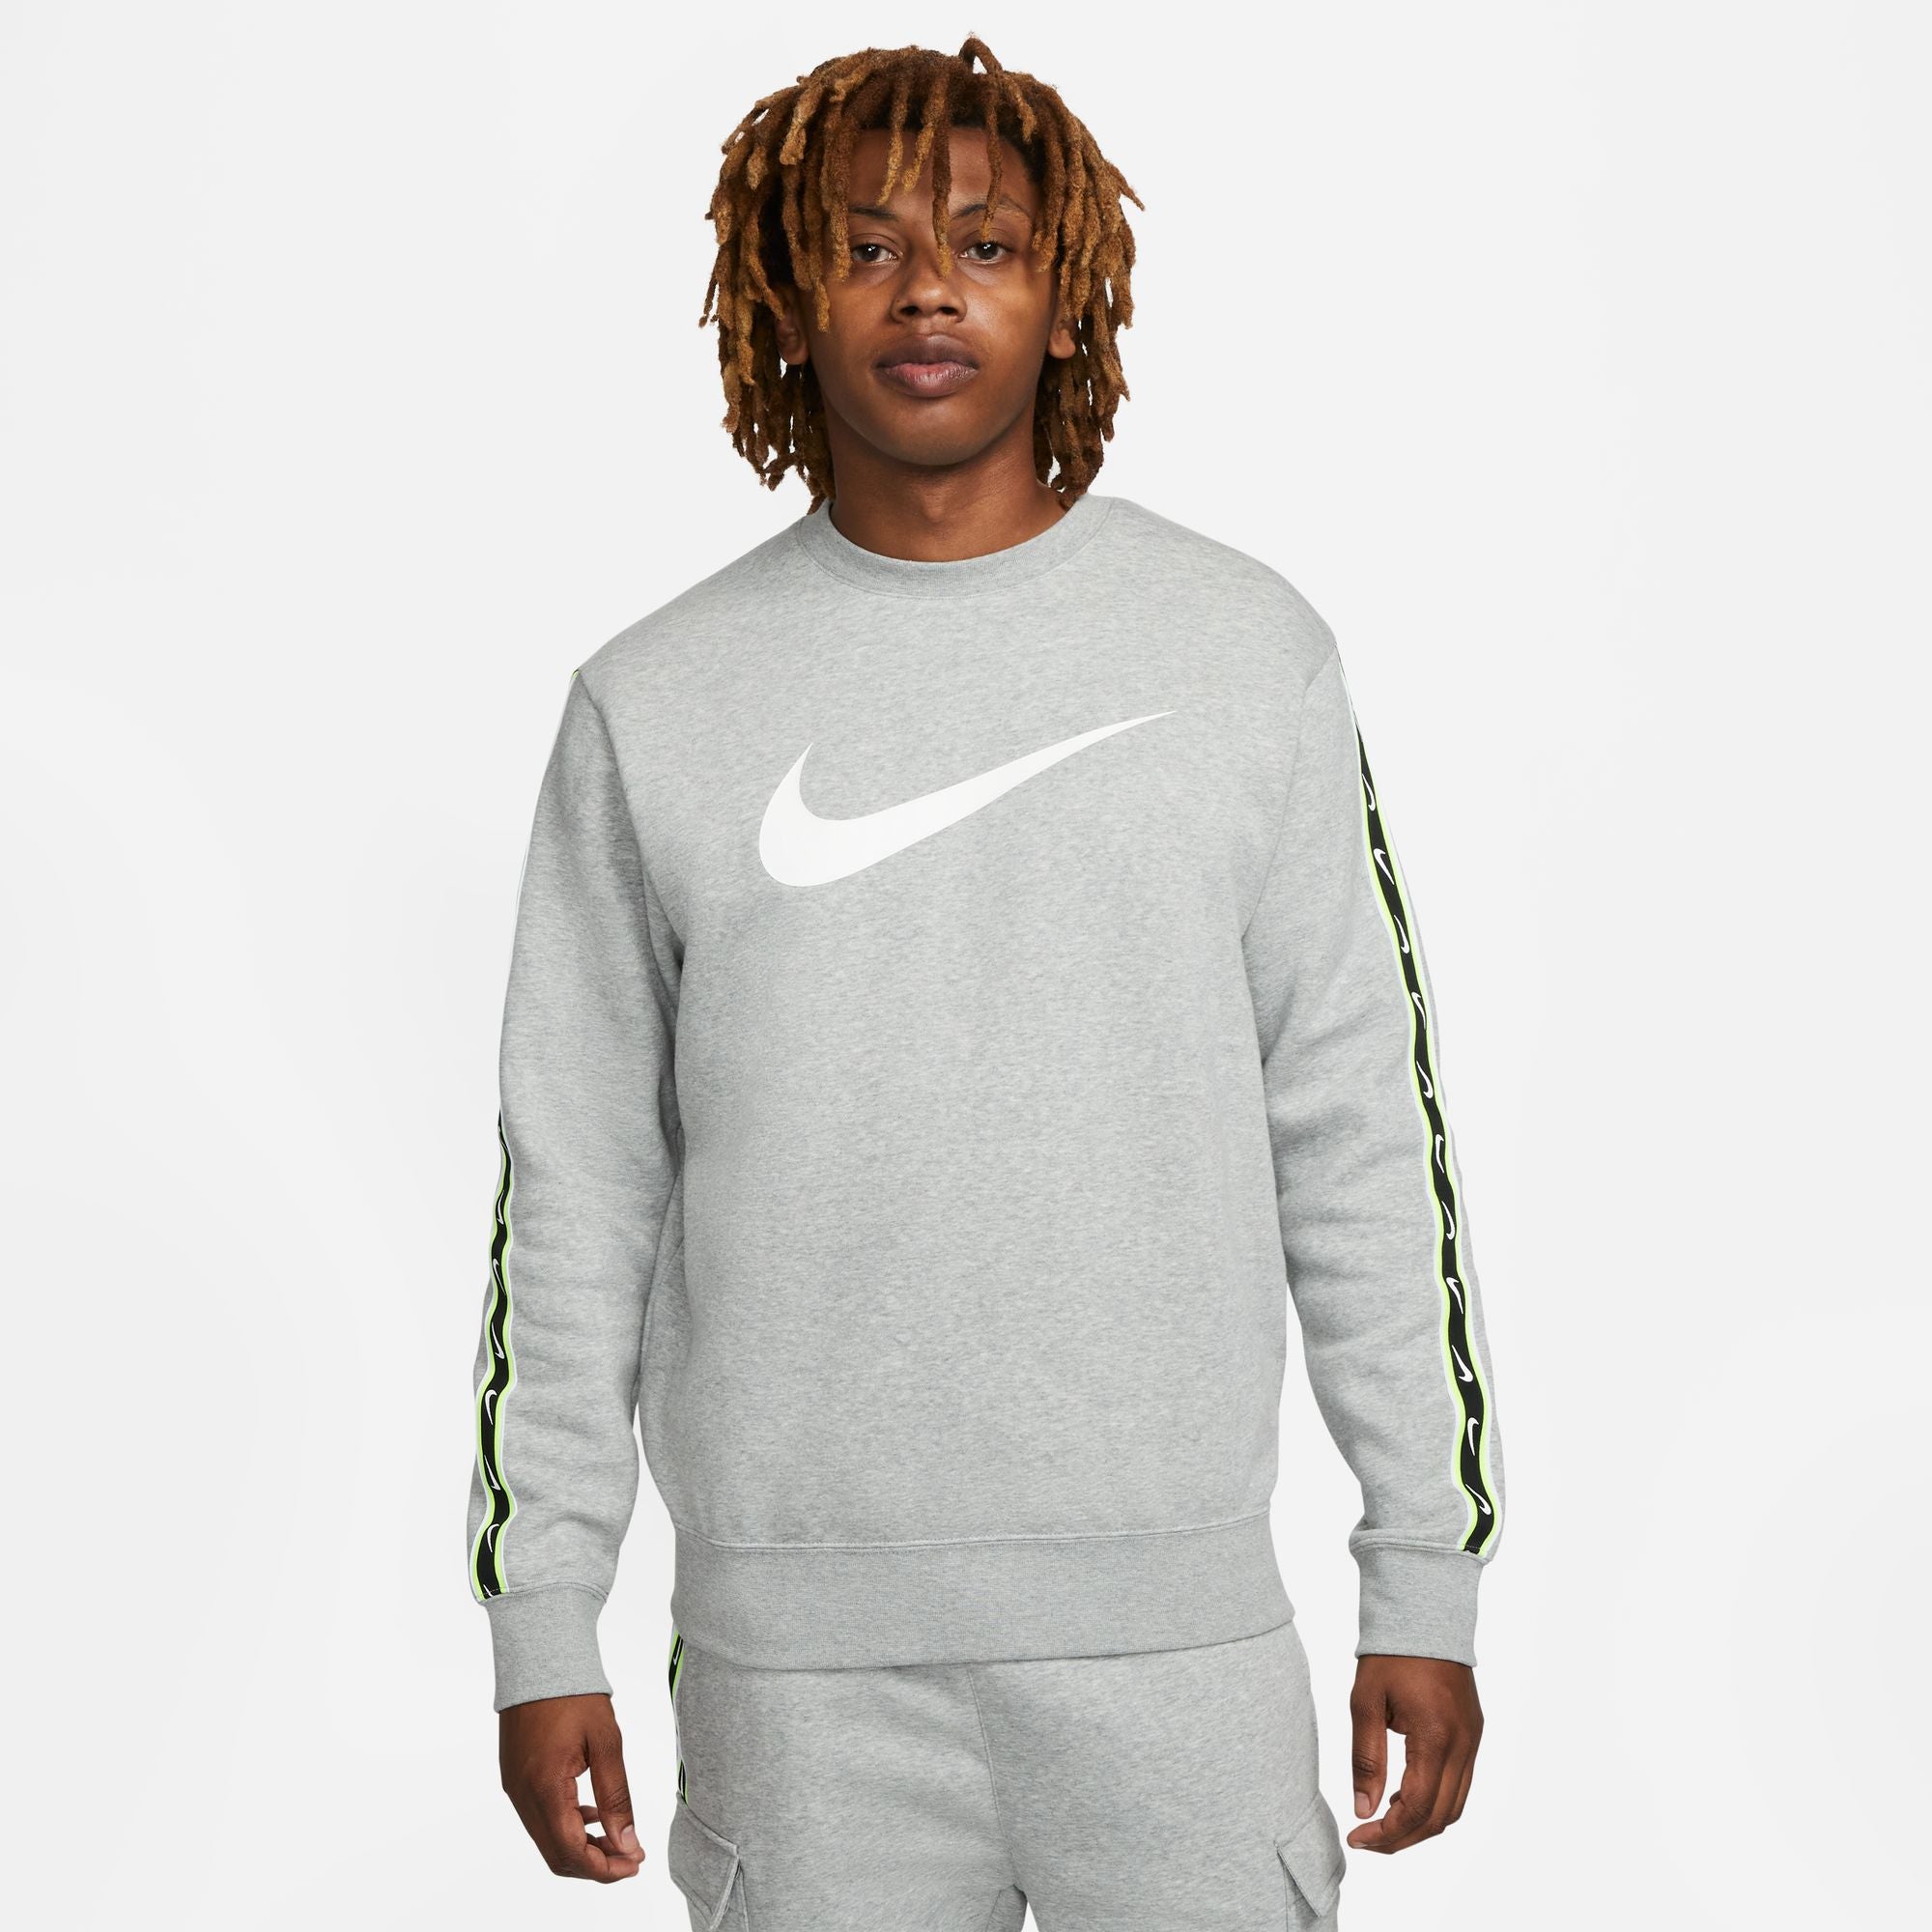 Sweat capuche Nike Sportswear Club fleece - Vert – Footkorner